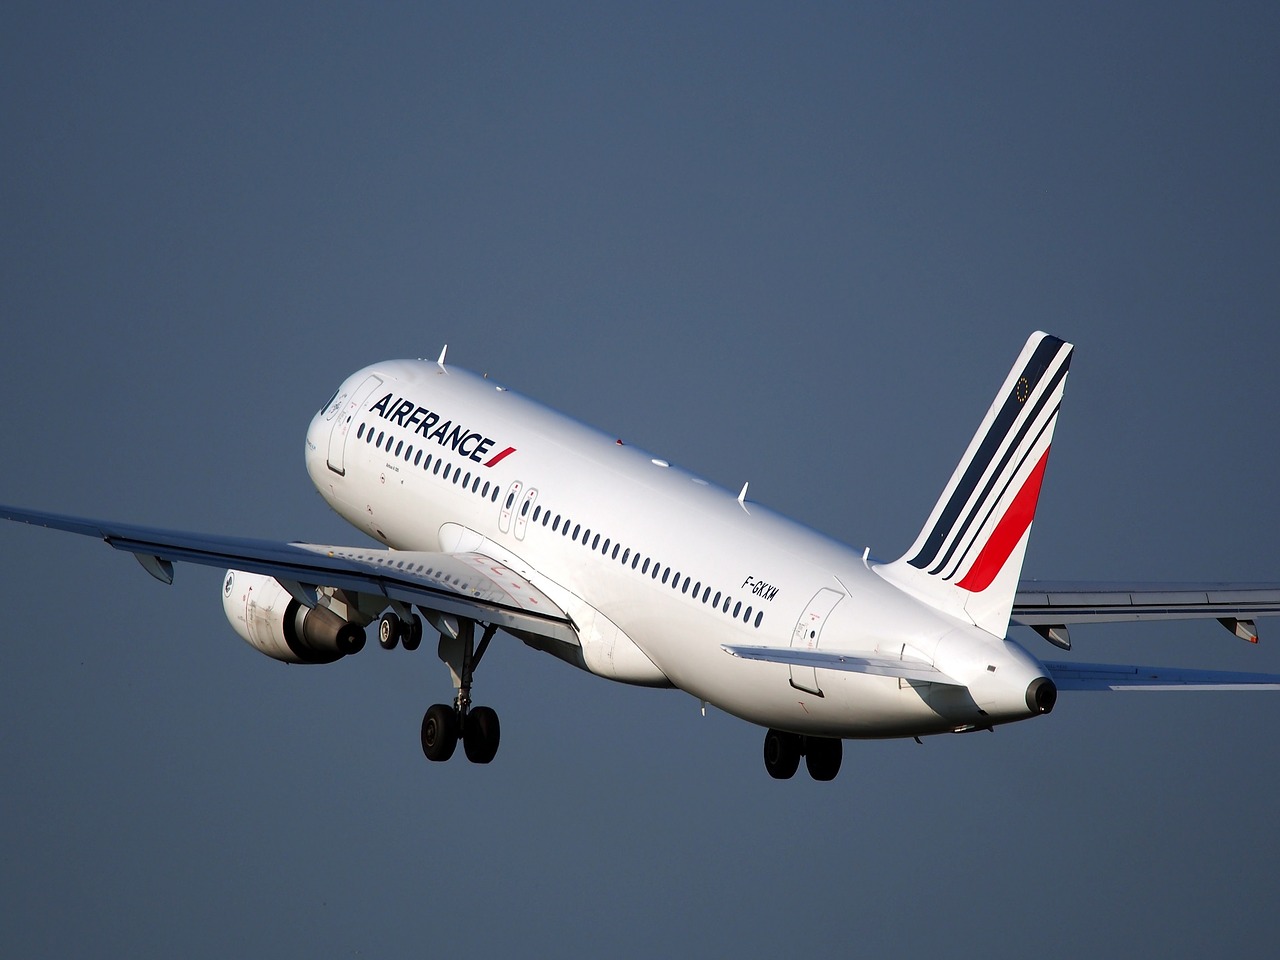 Intersyndicale d'Air France : pas de préavis de grève ni d'ultimatum